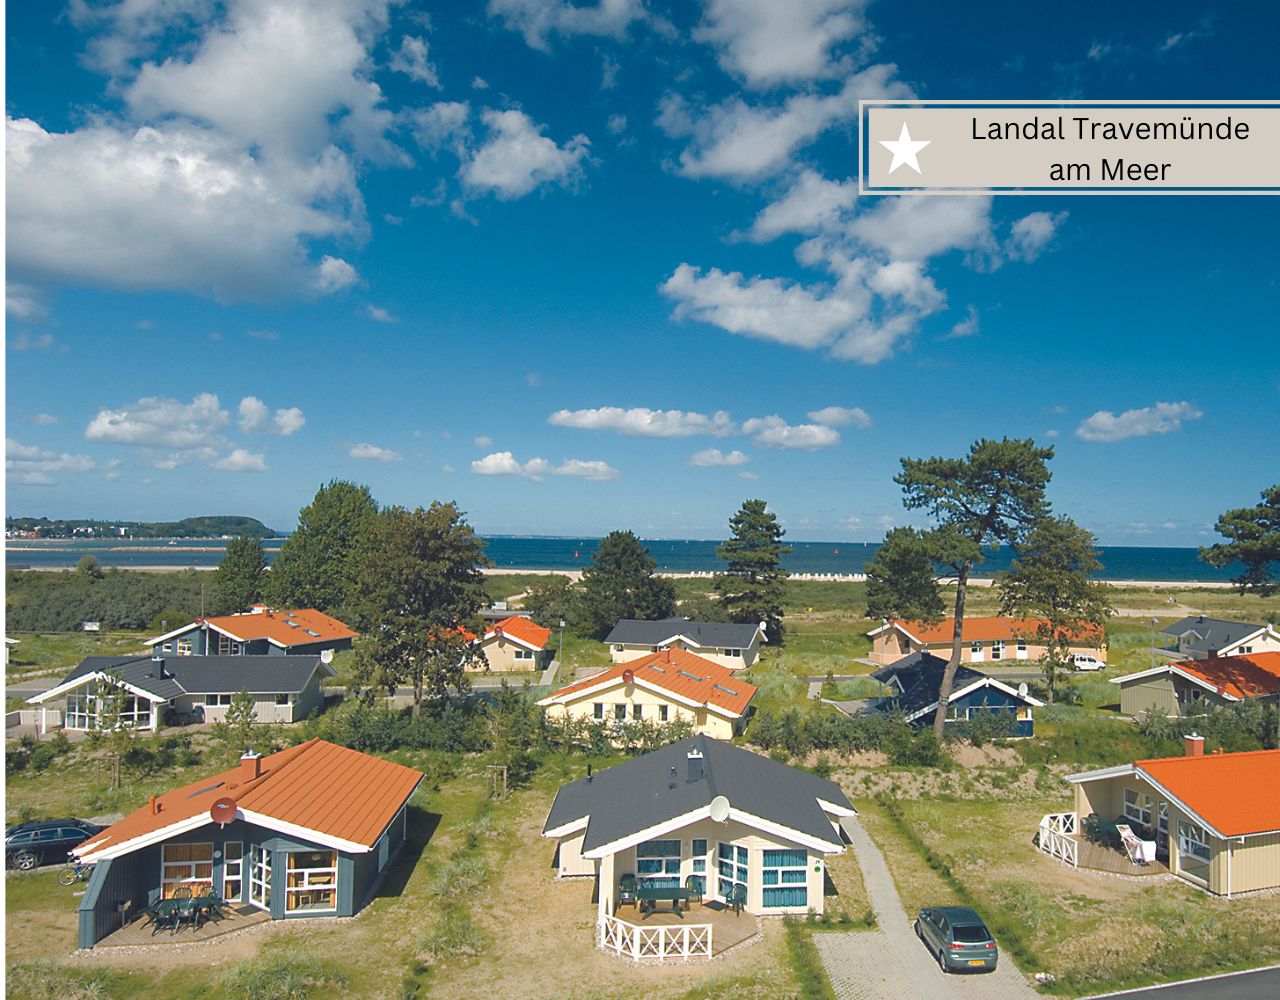 Rabatte und Angebote für die Landal Ferienparks direkt am Meer in Travemünde